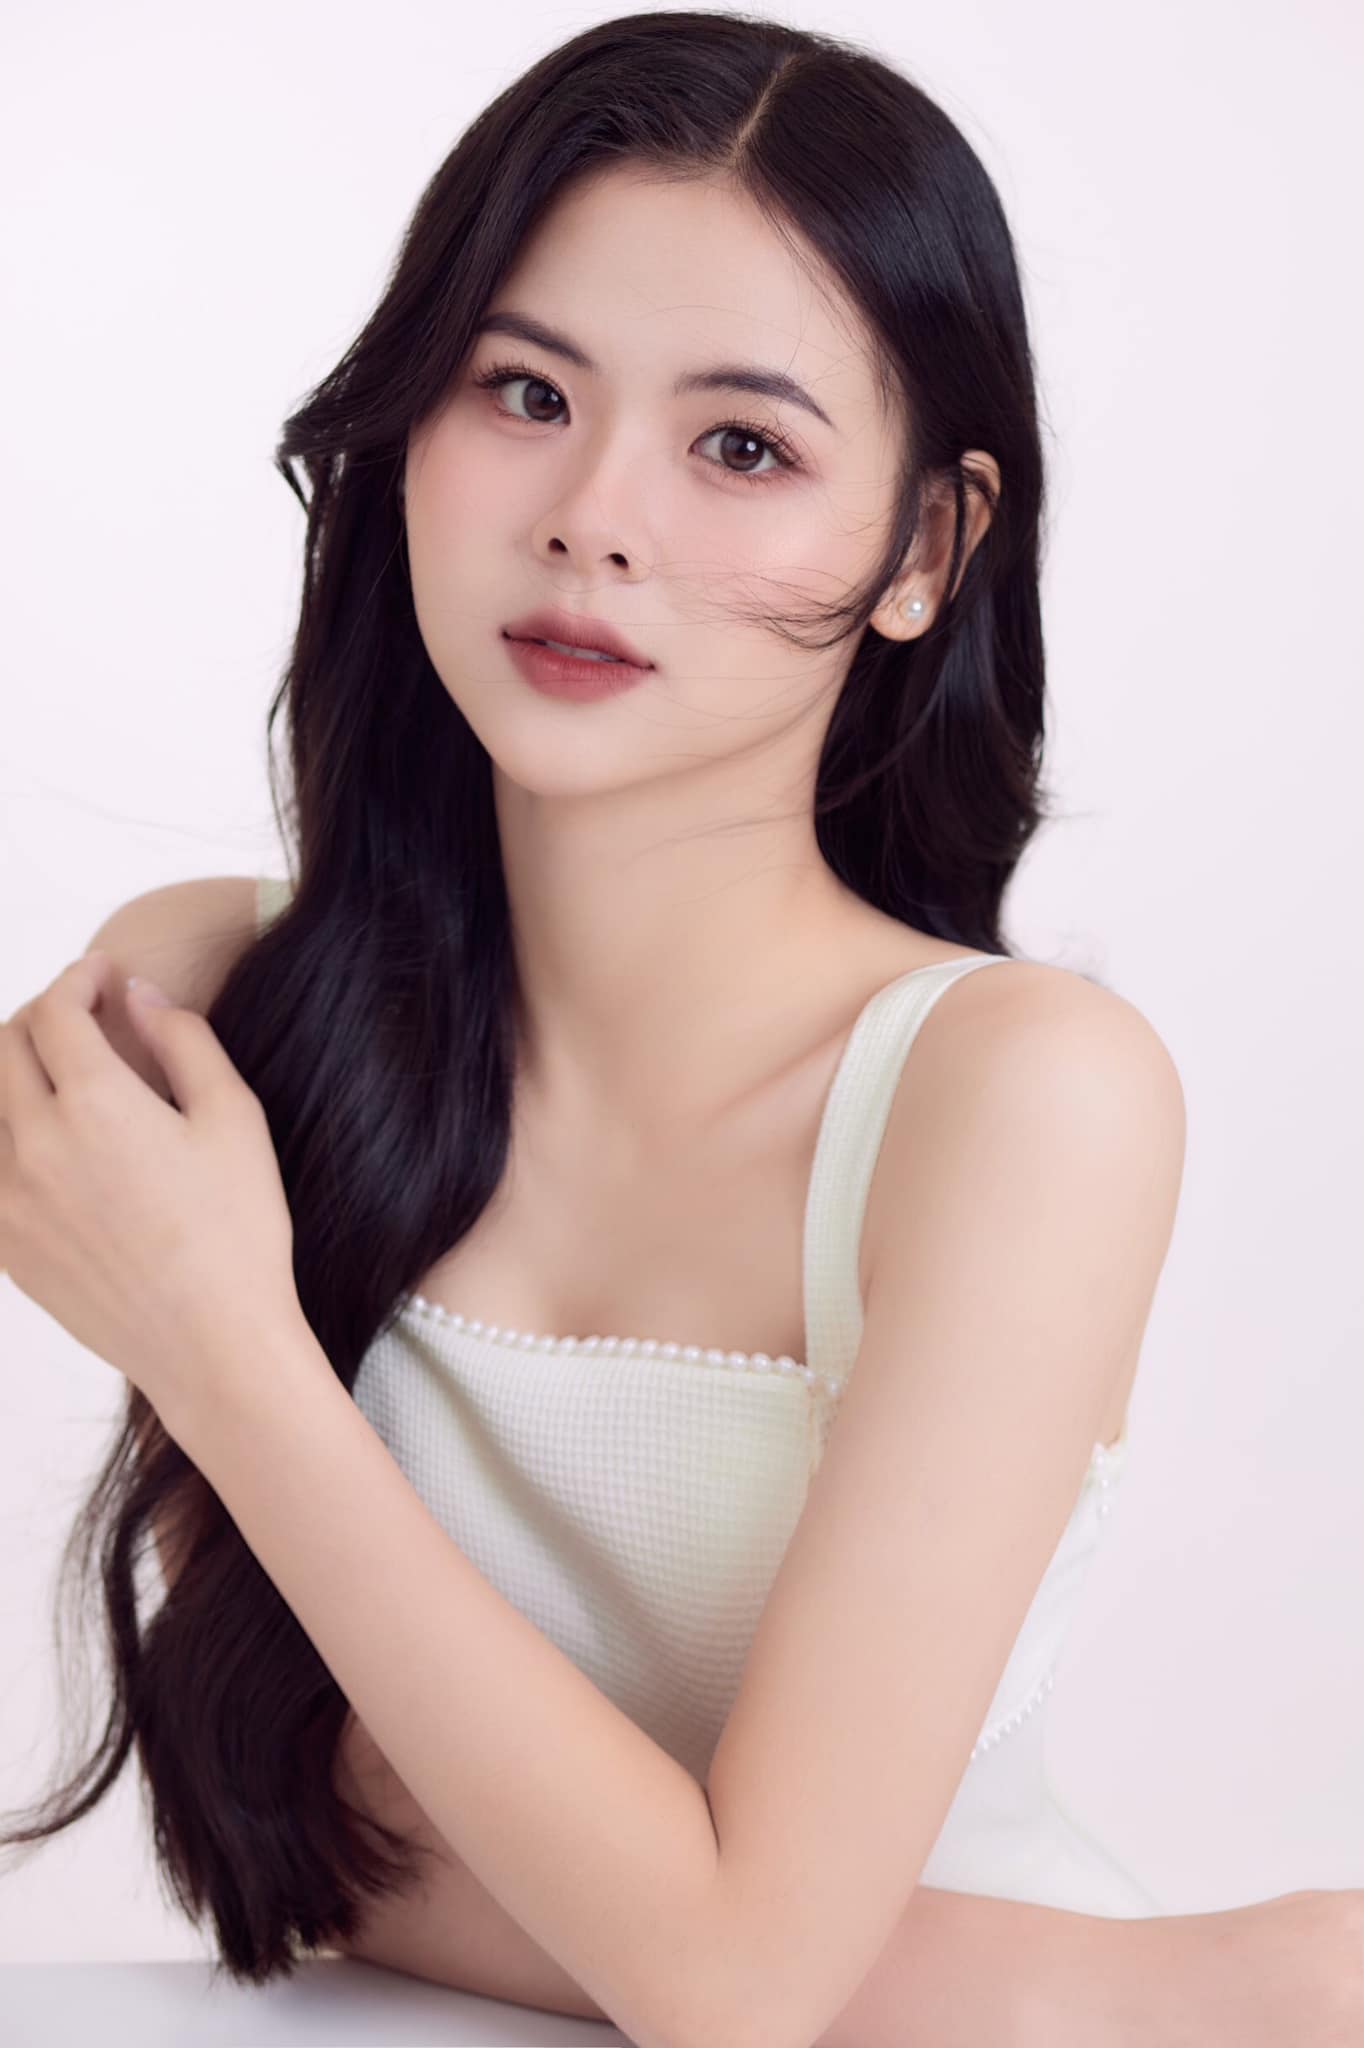 Nhan sắc xinh đẹp, lôi cuốn của thí sinh cao 1,7m vào thẳng Top 20 Miss World Vietnam 2023 - Ảnh 7.